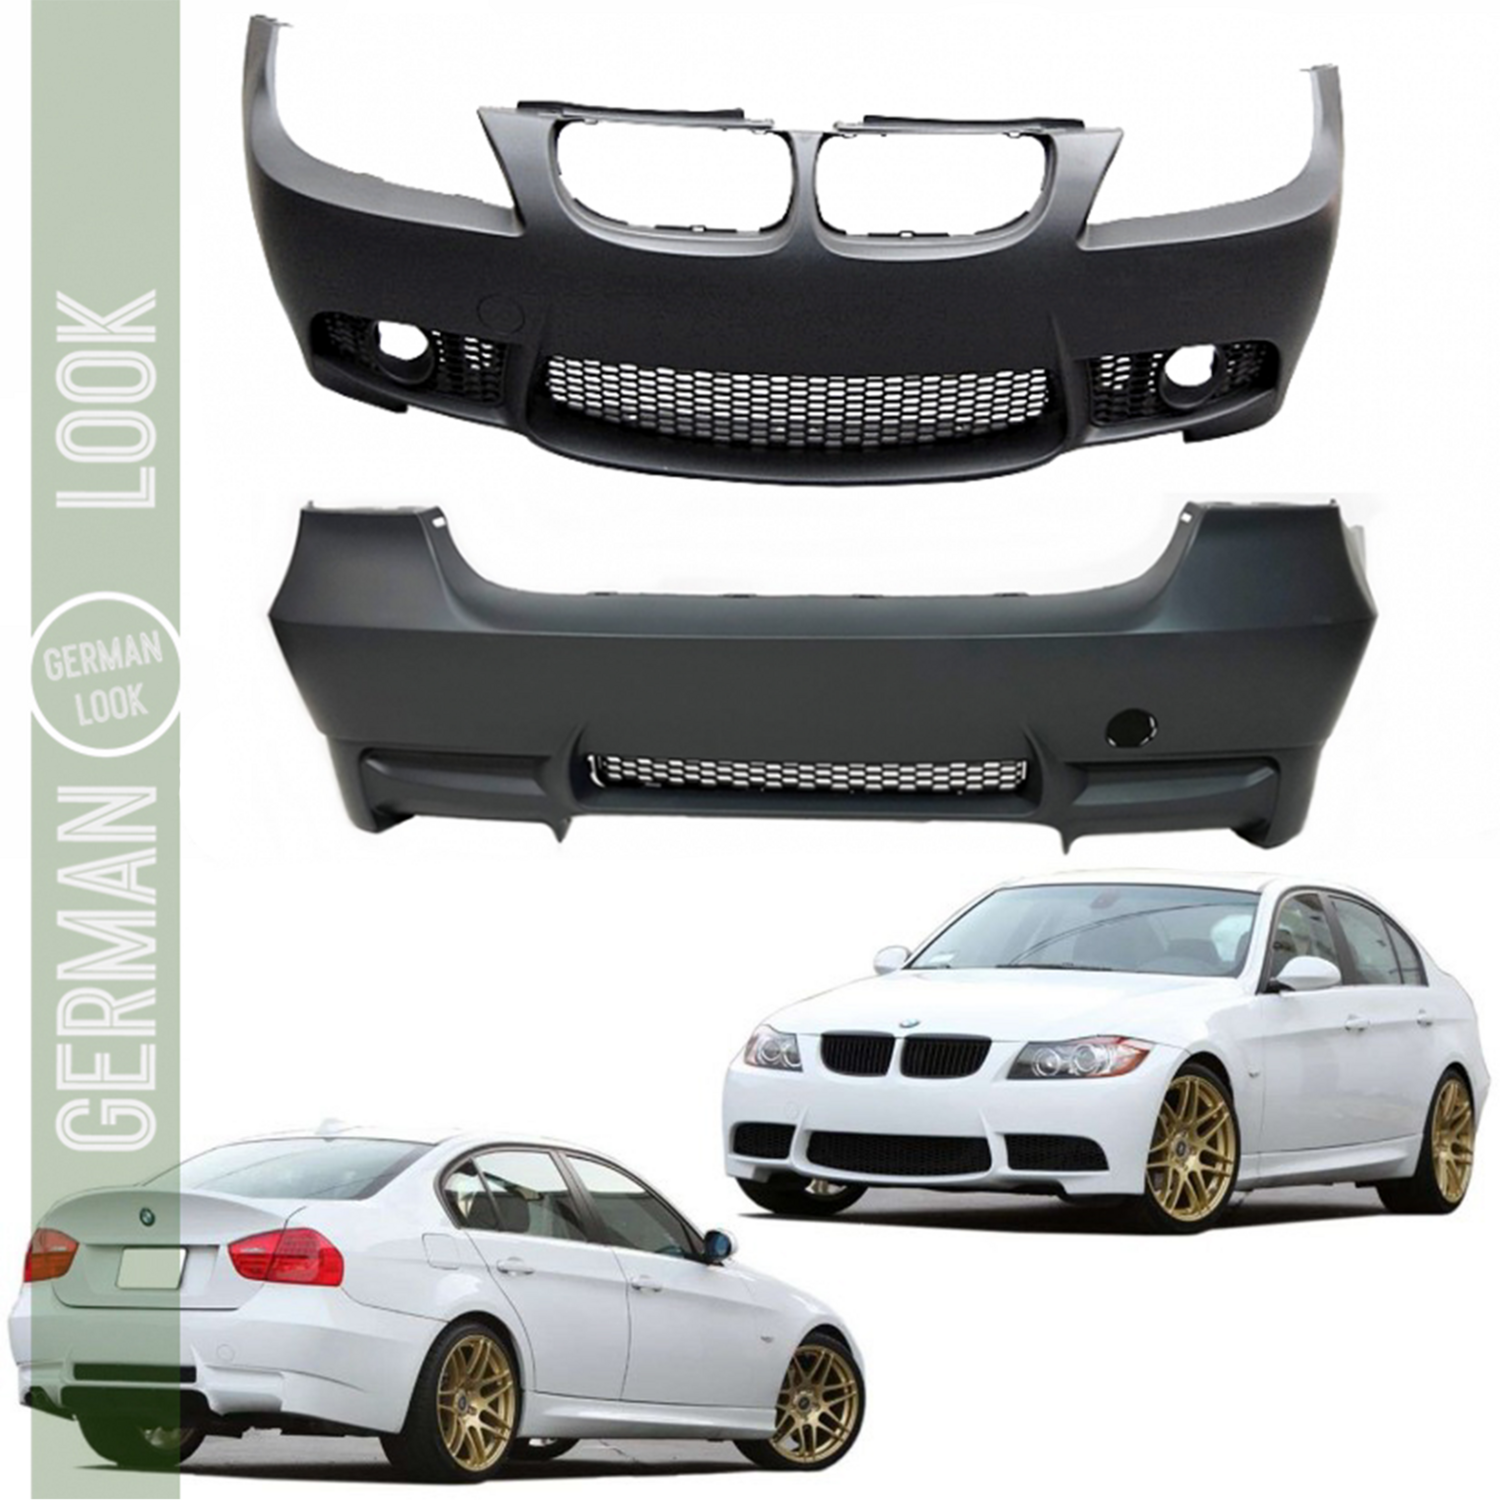 Pare-chocs / Bodykit / Kit de carrosserie pour BMW Série 3 E90 Look M3 2005-2008